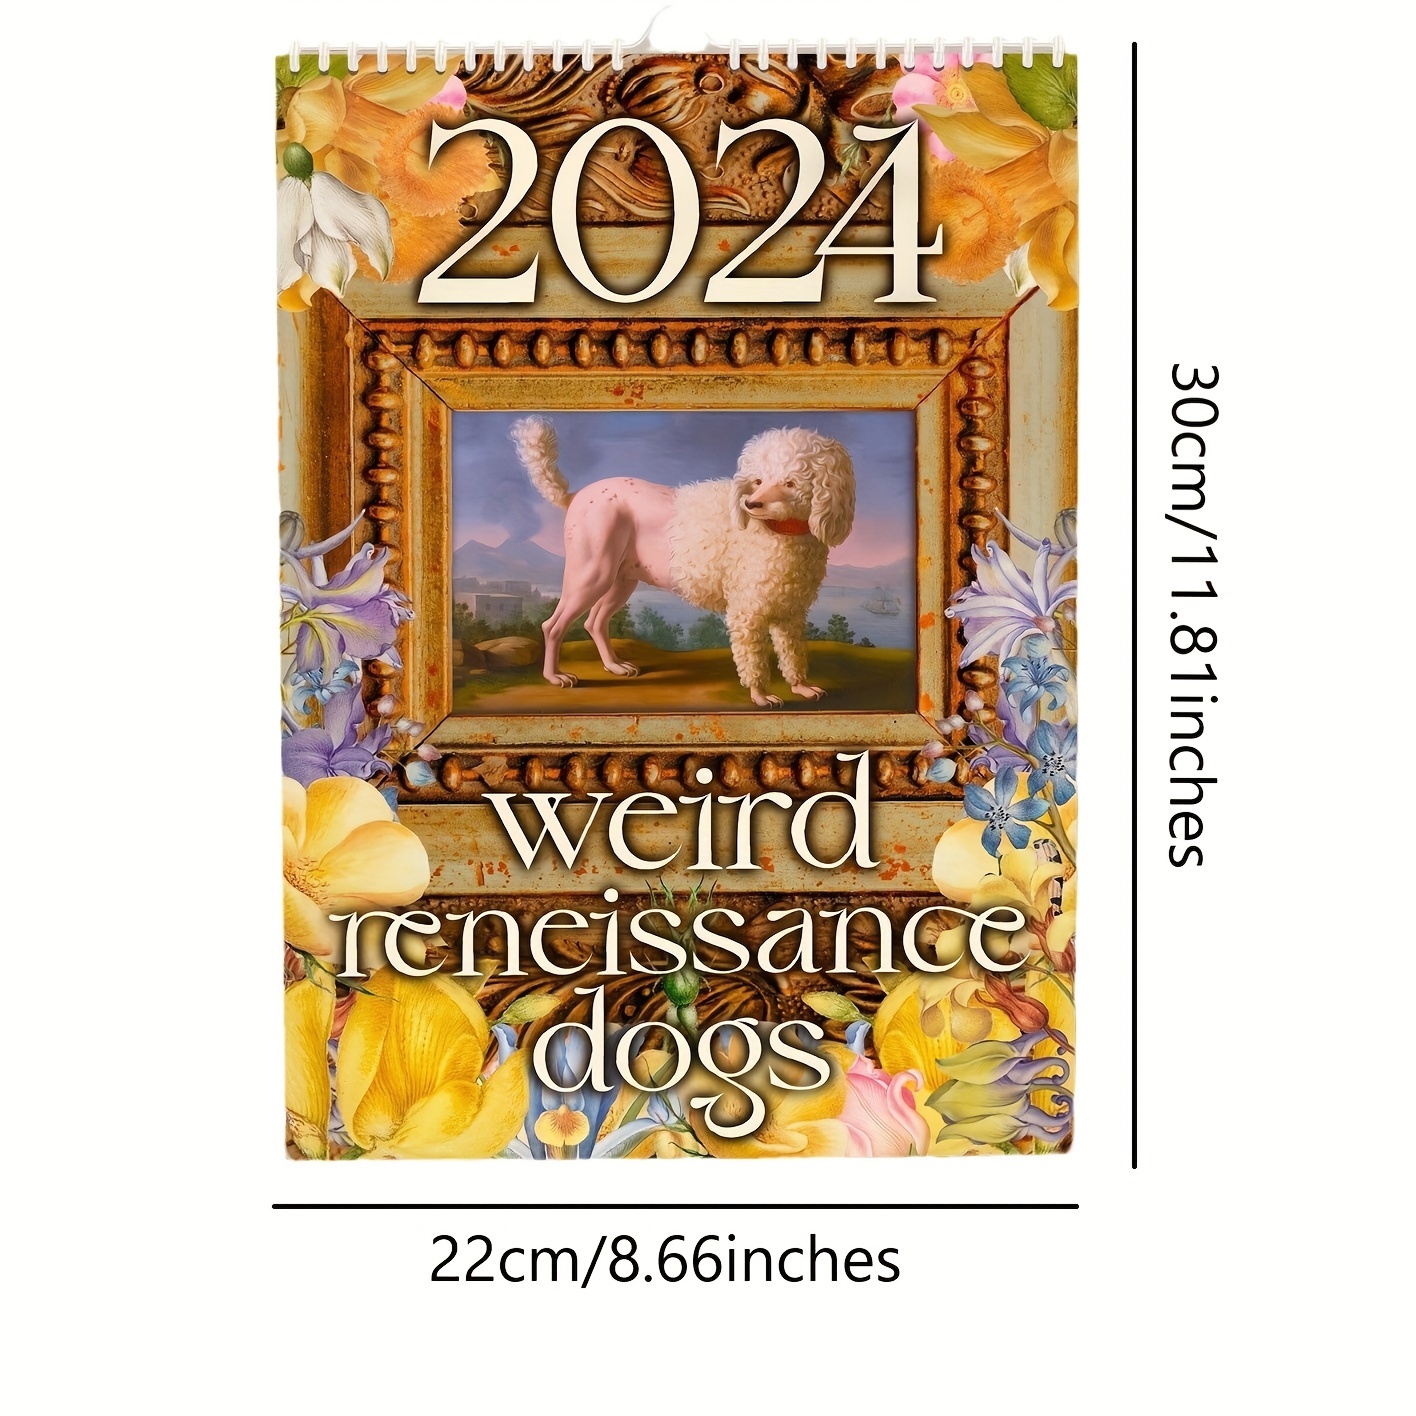 2024 Wall Calendar - Calendar 2024, Wall Calendar 2024, Cutie Dogs